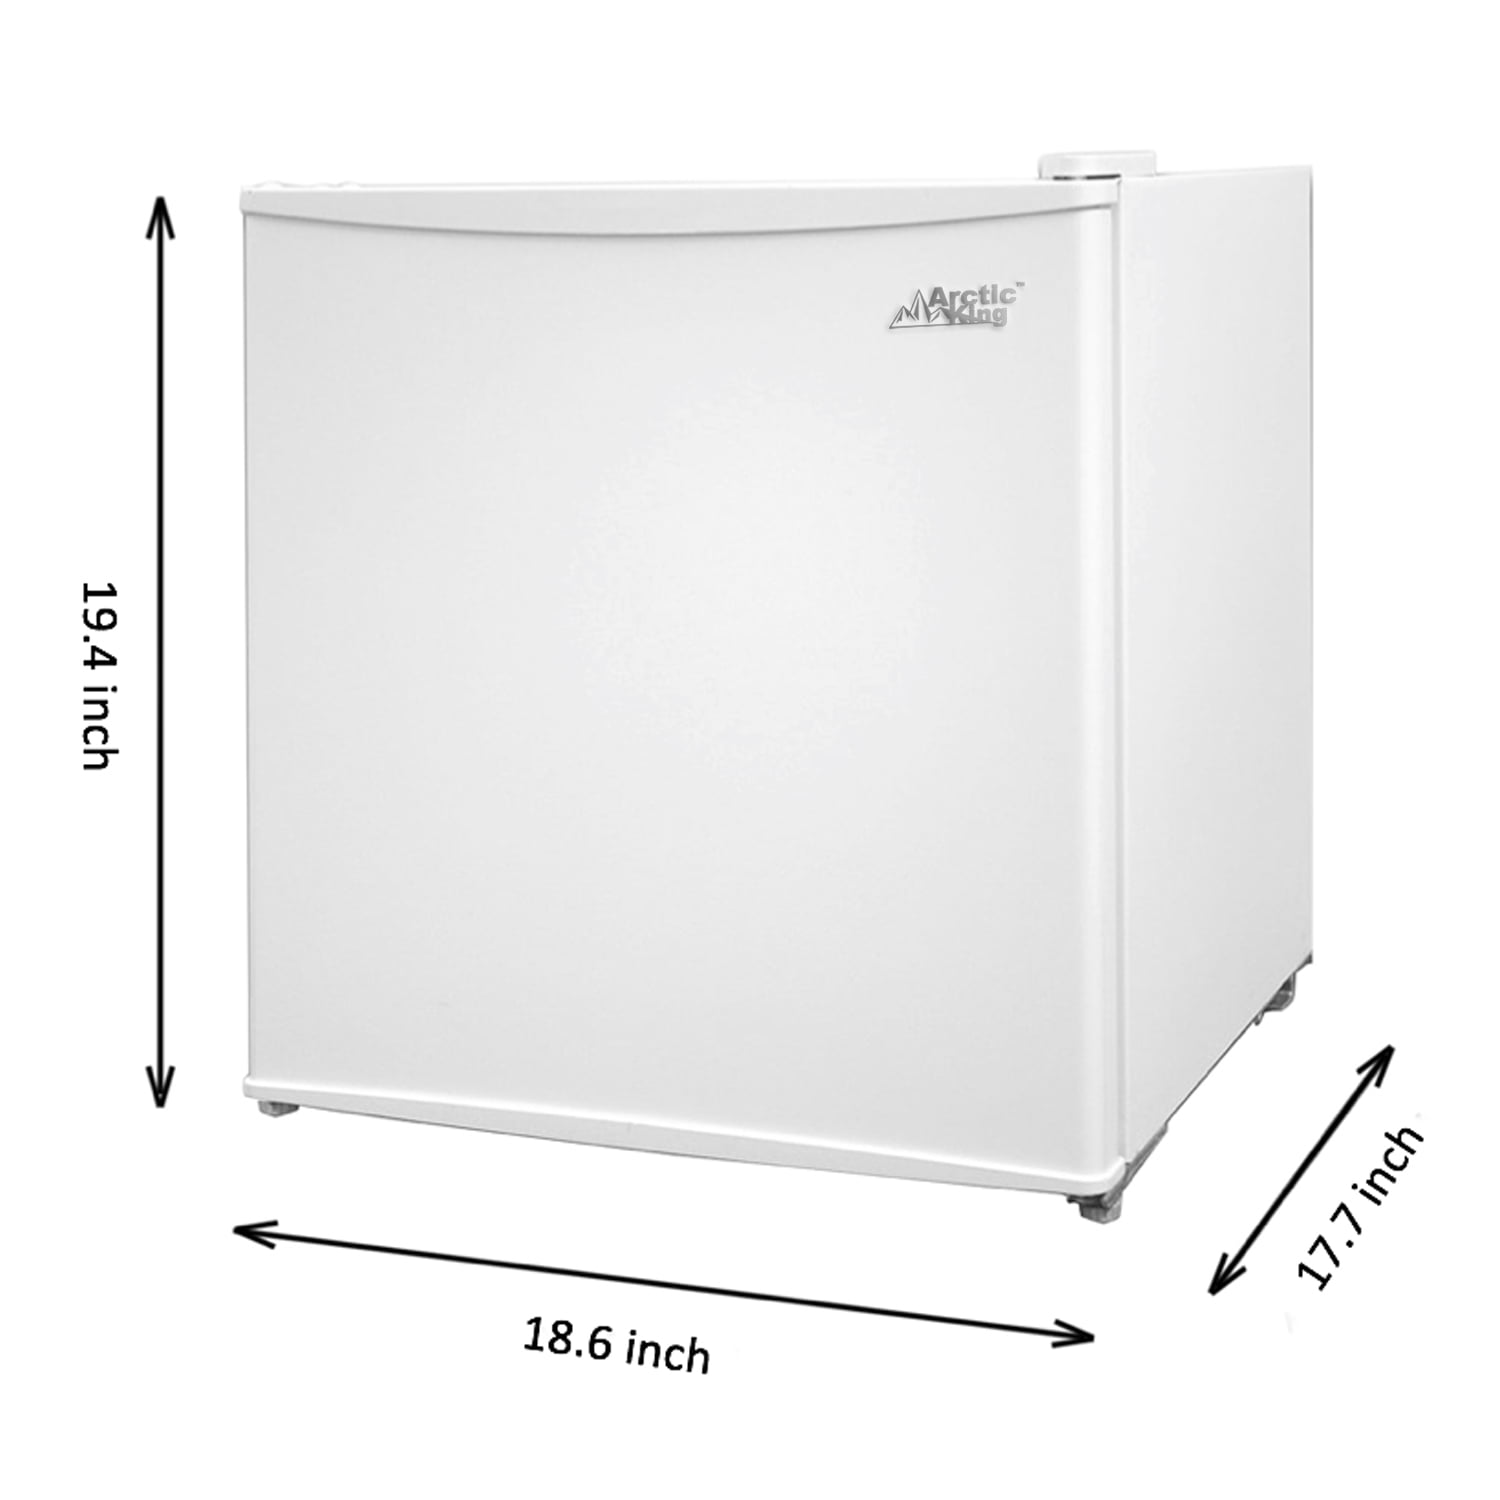 Compact 1.1 Cu Ft Mini Freezer in White